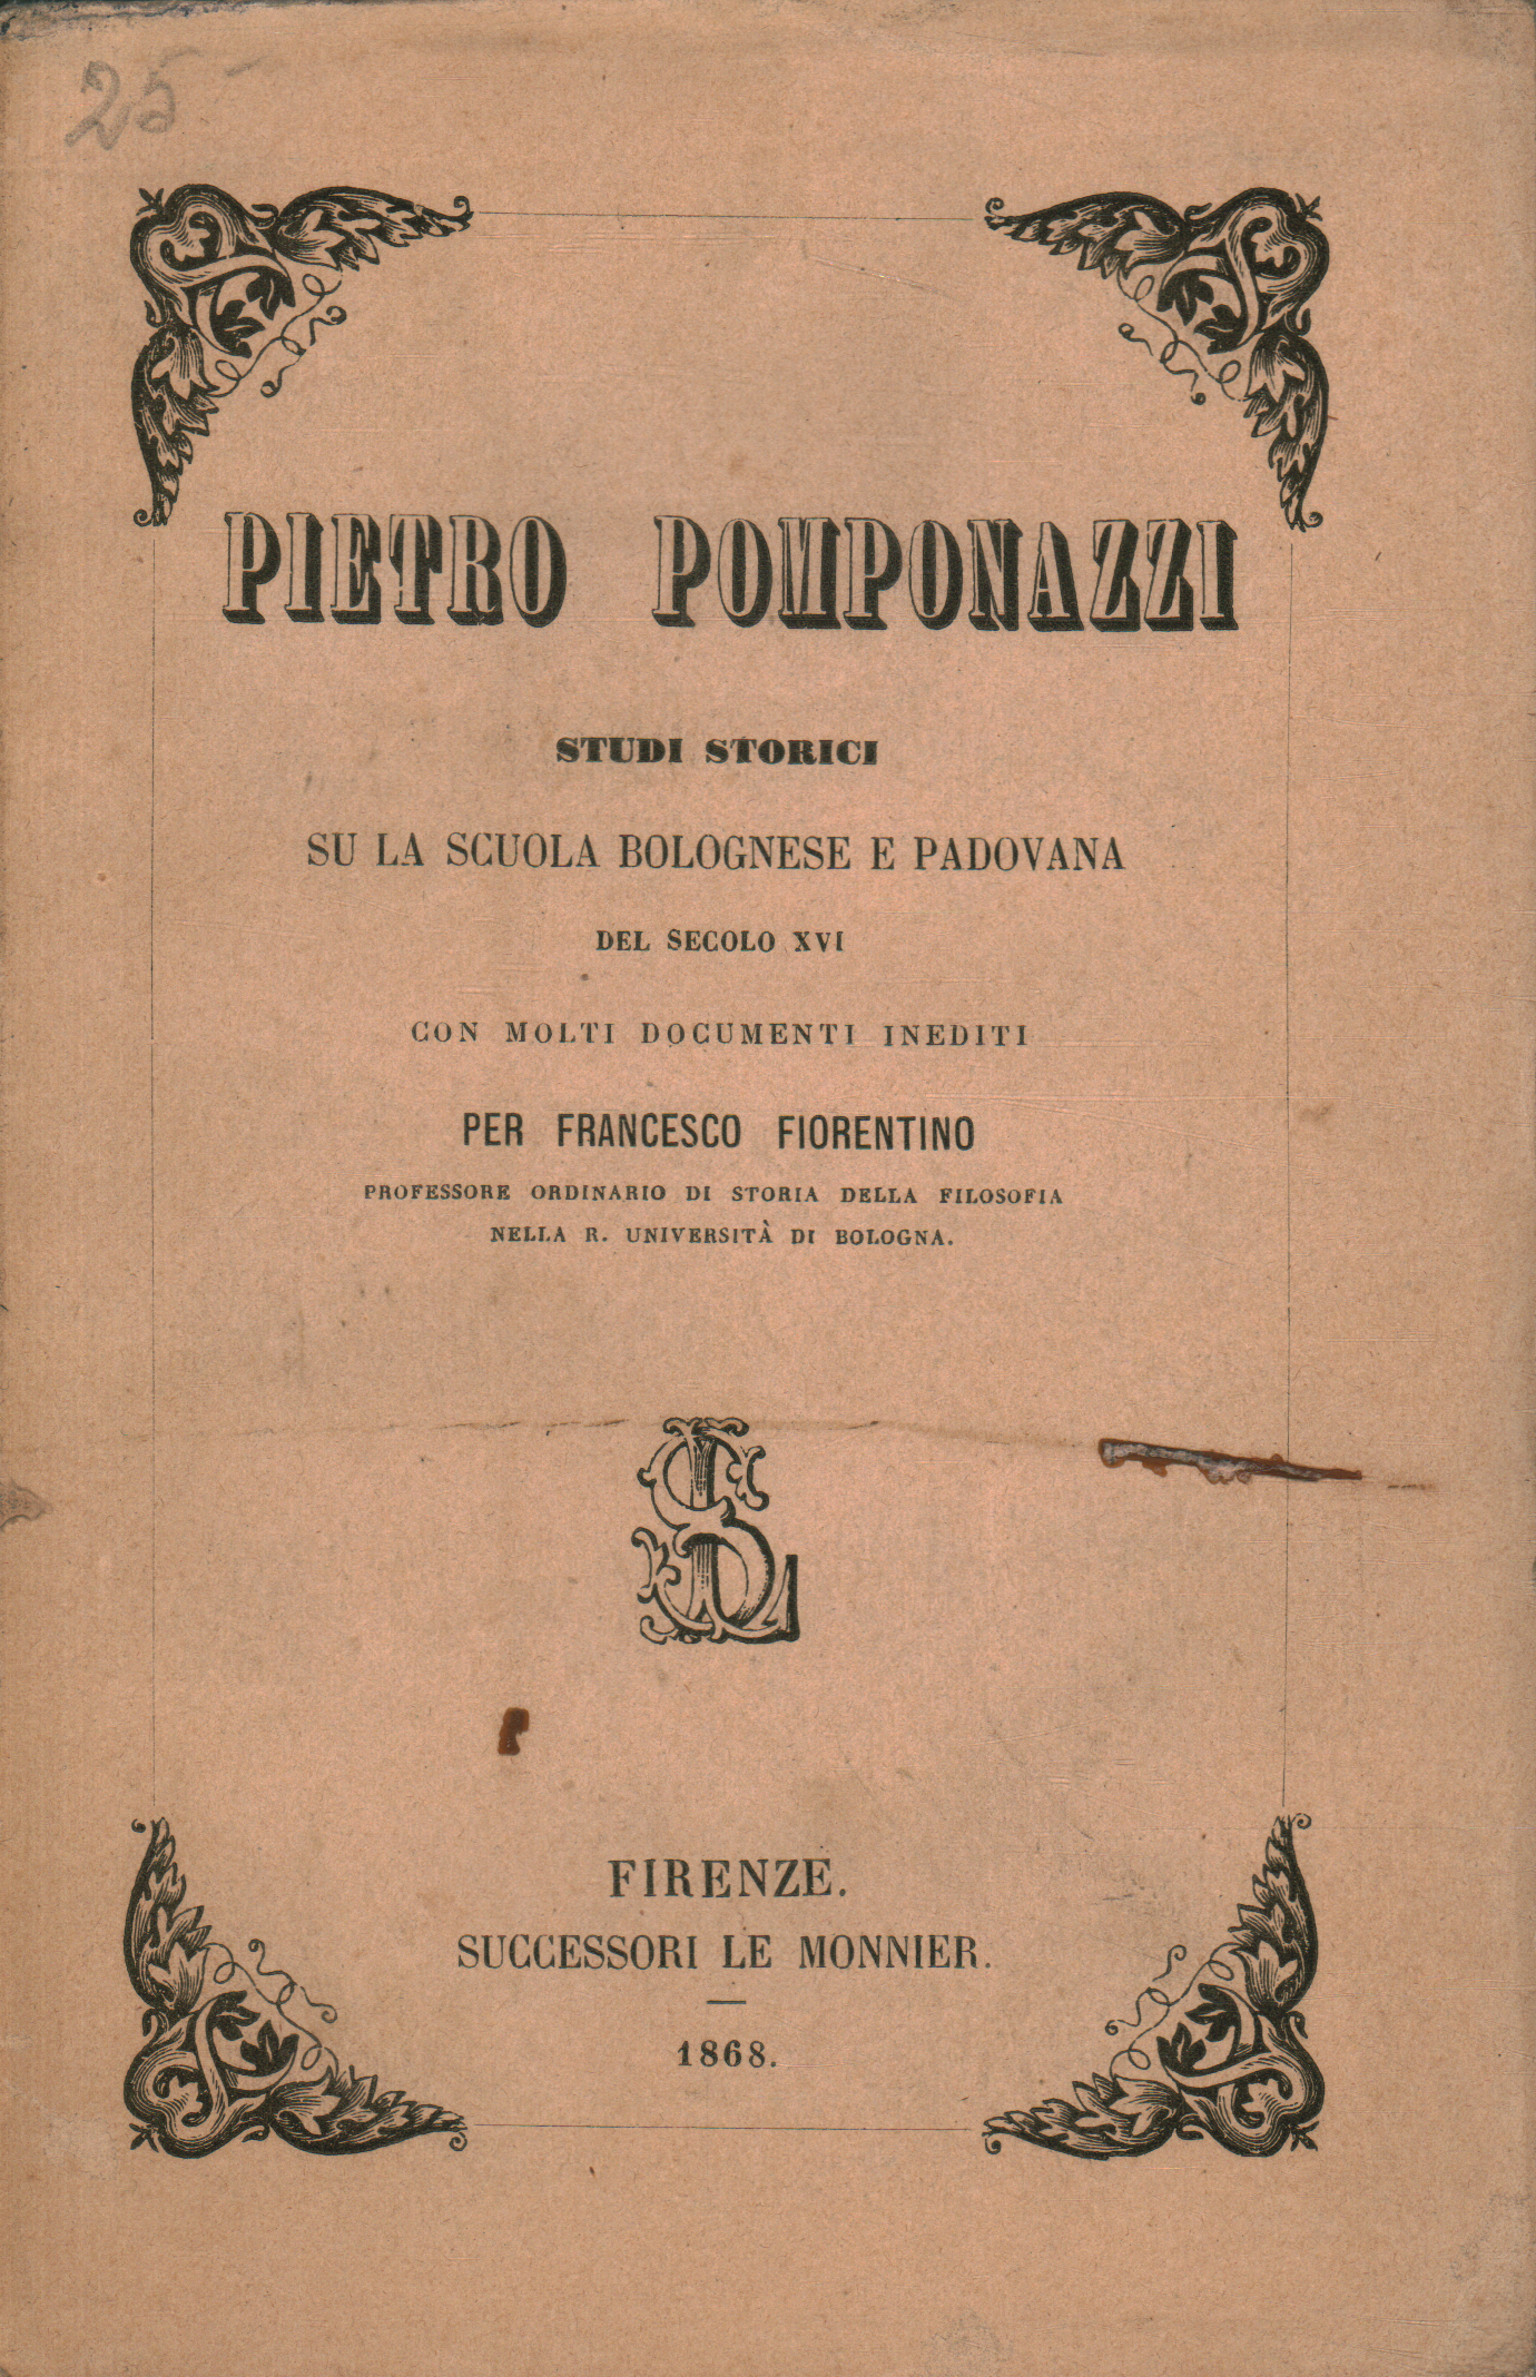 Pietro Pomponazzi. Estudios históricos sobre el % 2, Pietro Pomponazzi. Estudios históricos sobre el % 2